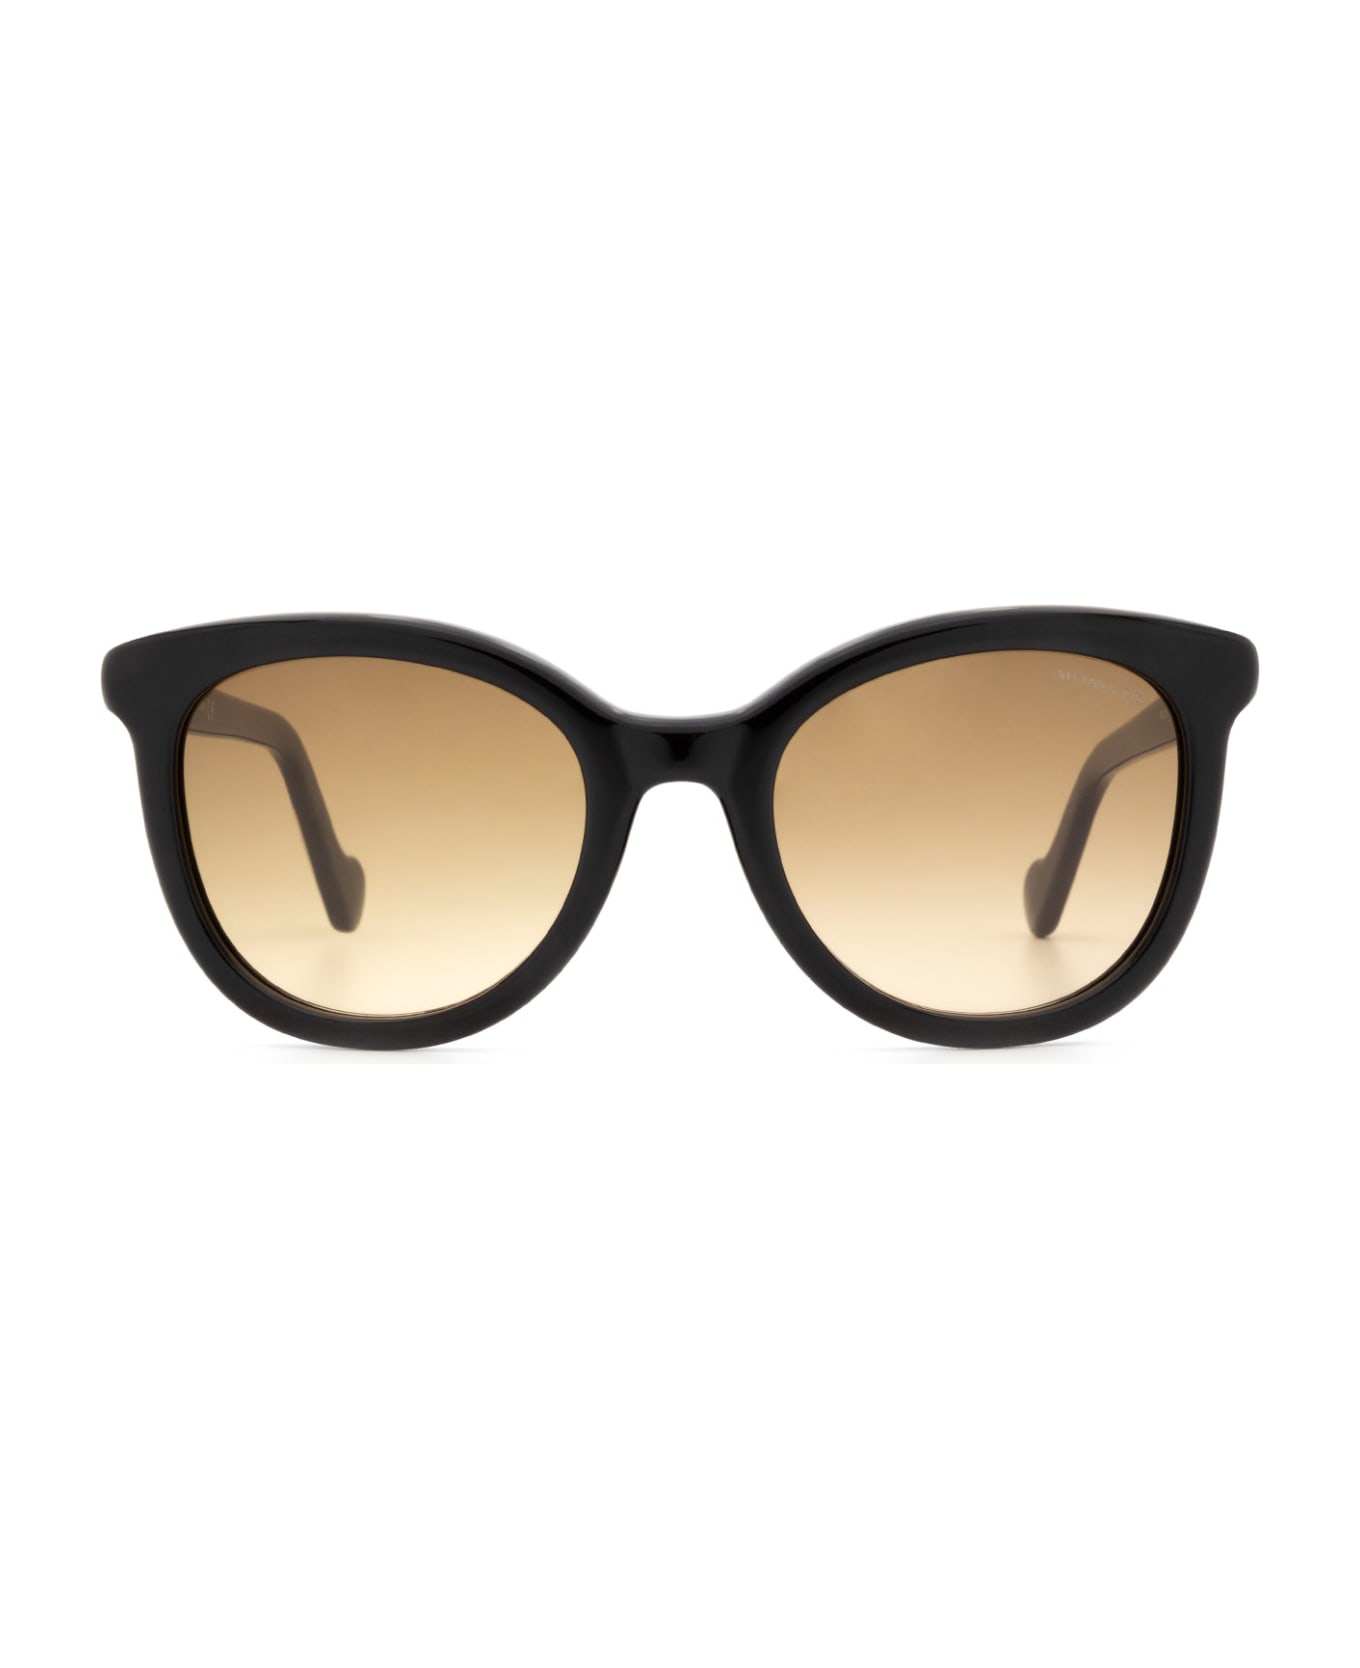 Moncler Eyewear Ml0119 Shiny Black Sunglasses - Shiny Black サングラス